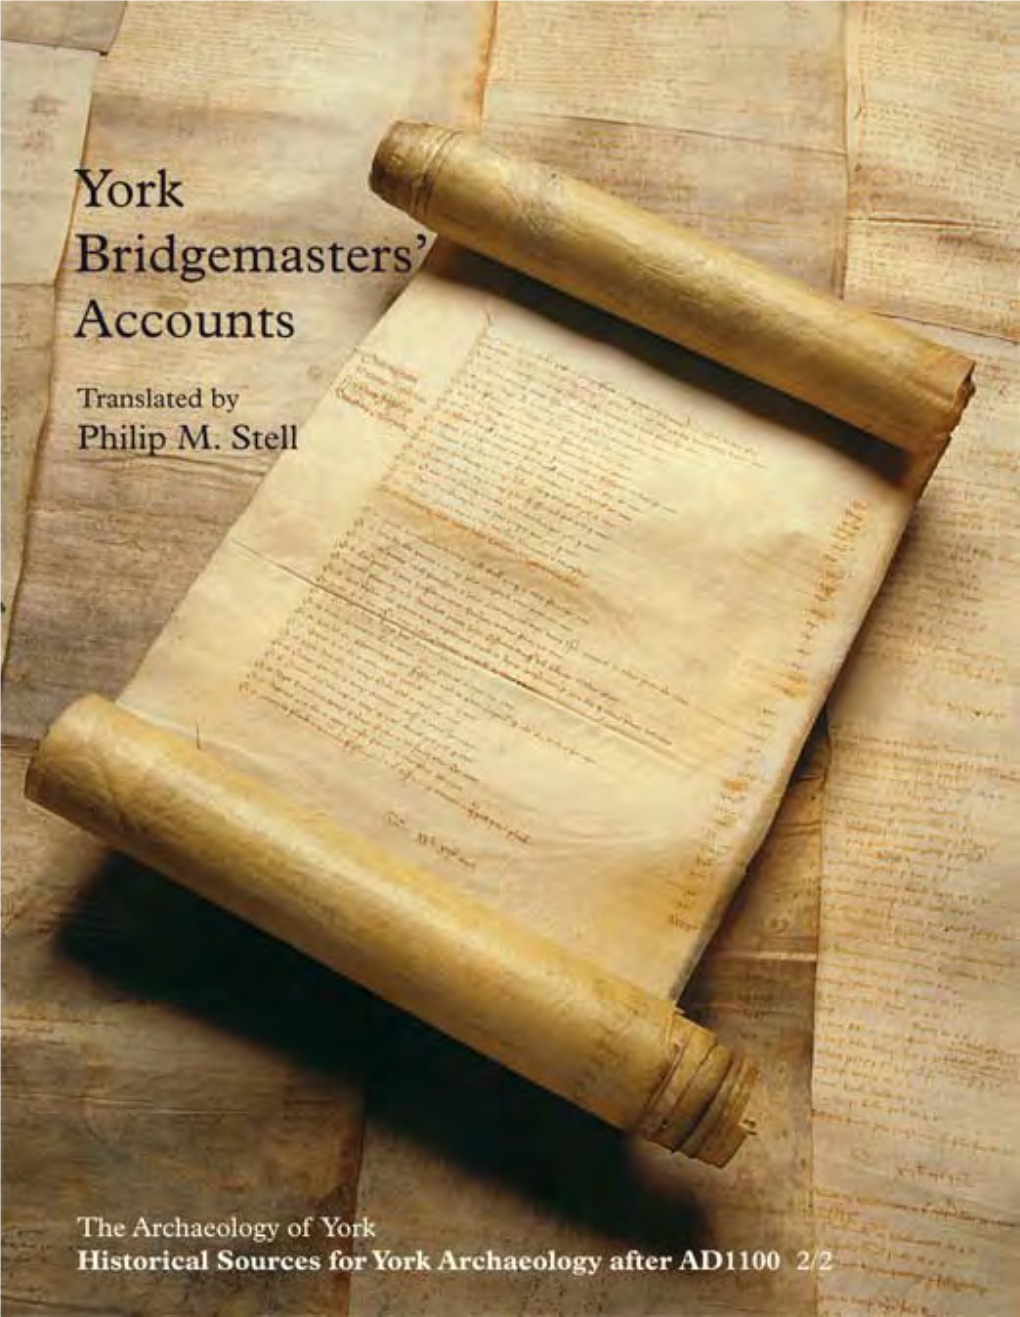 York Bridgemasters' Accounts